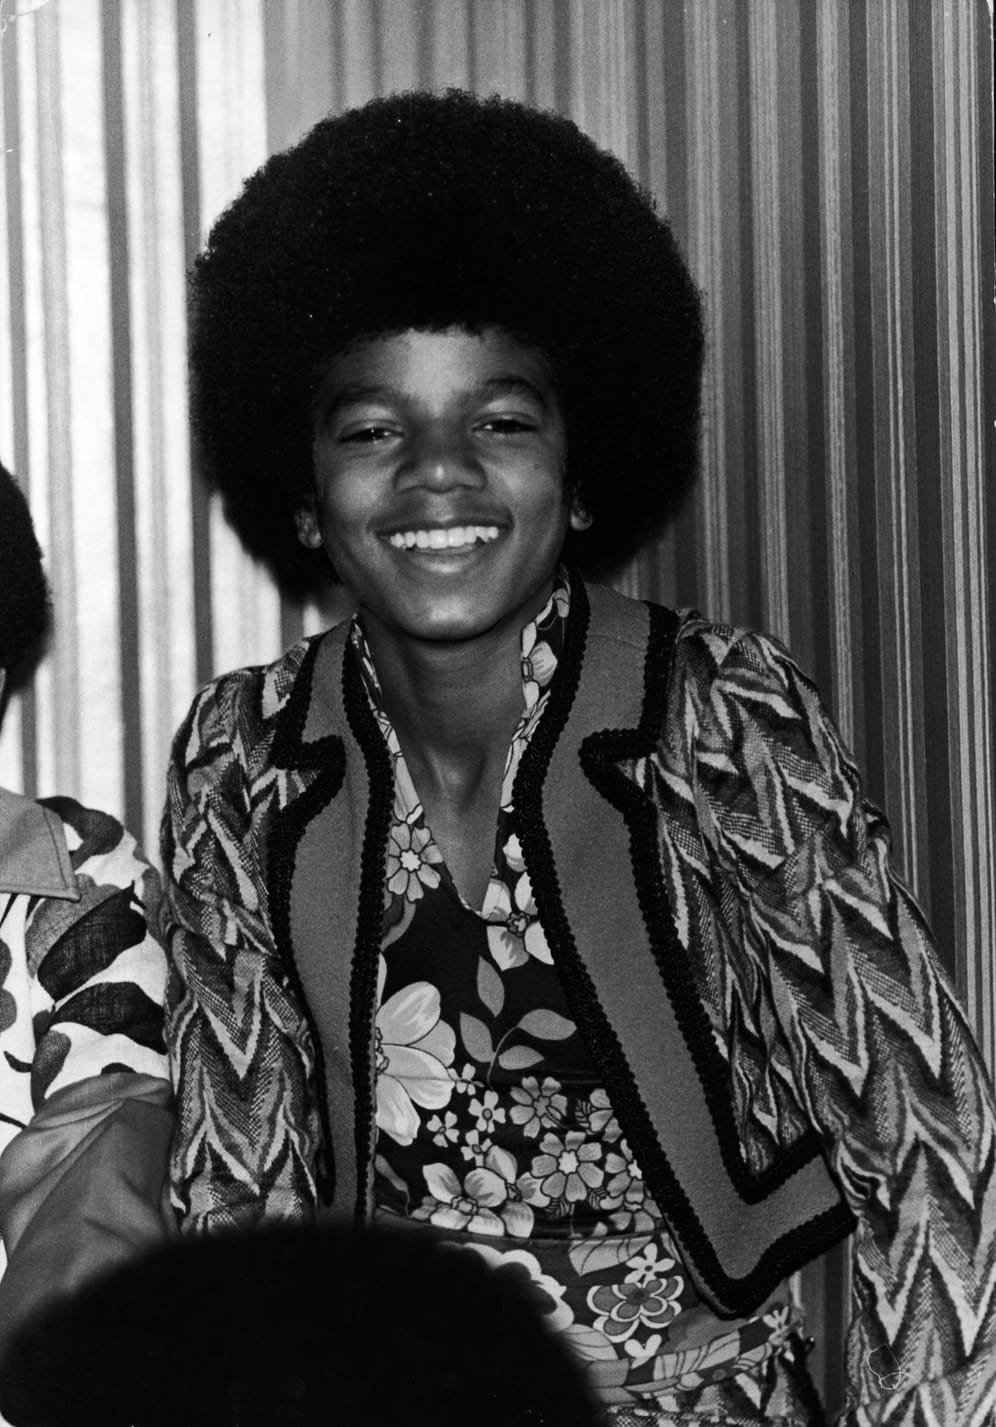 November 1972: Der 14-jährige Michael lächelt hier in einem Hotel in London in die Kamera. Zu dieser Zeit ist die spätere Show-Business-Legende auf Tour mit den Jackson 5.